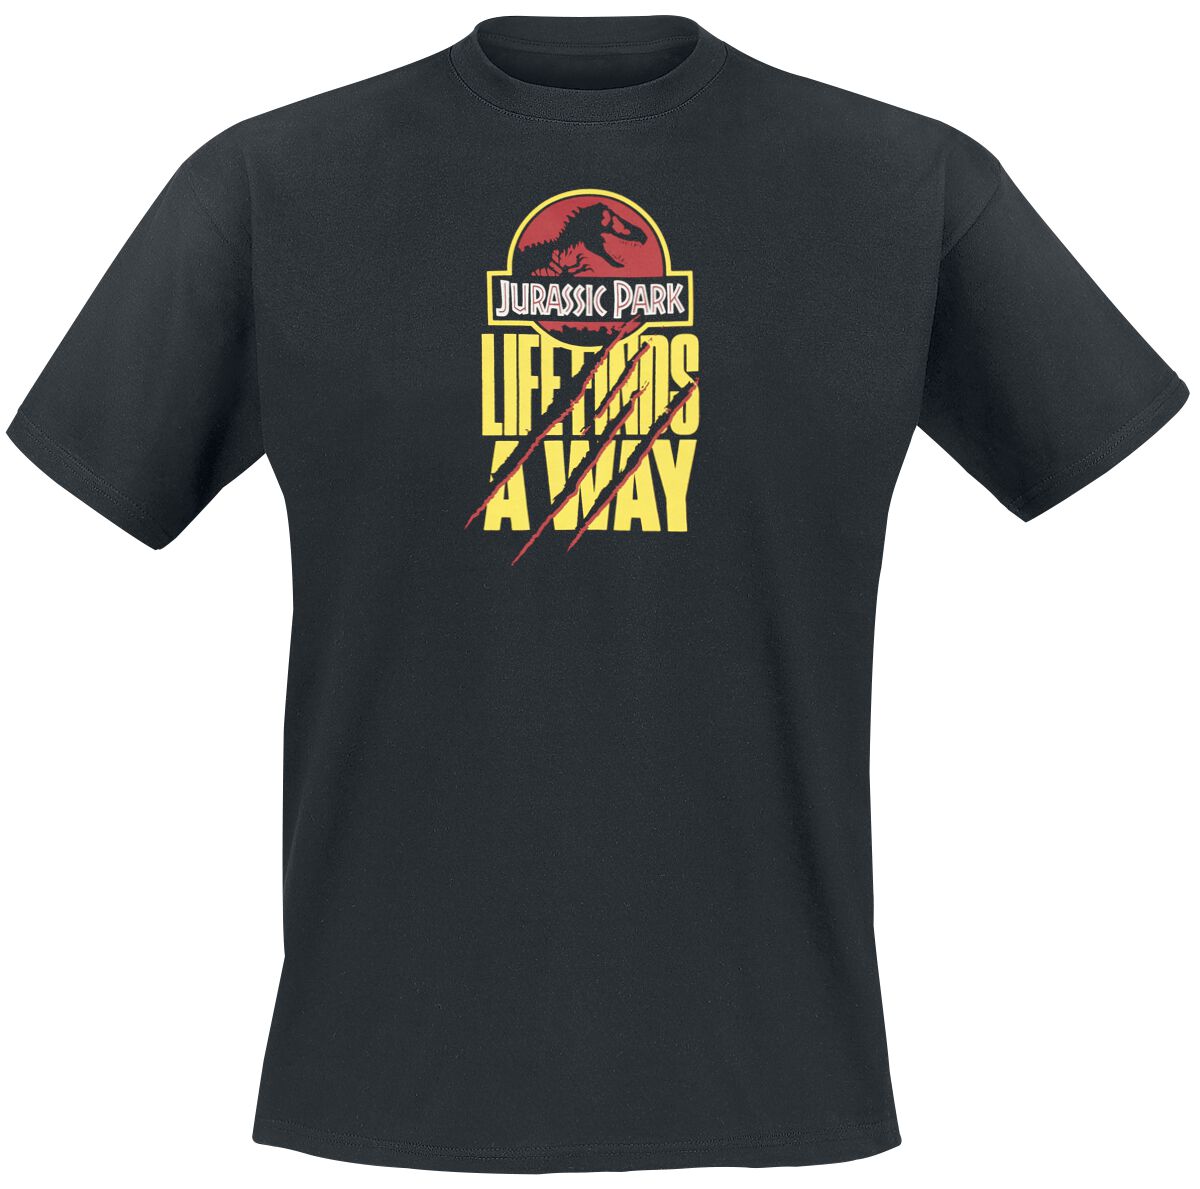 Jurassic Park T-Shirt - Life Finds A Way - S bis XXL - für Männer - Größe L - schwarz  - Lizenzierter Fanartikel von Jurassic Park